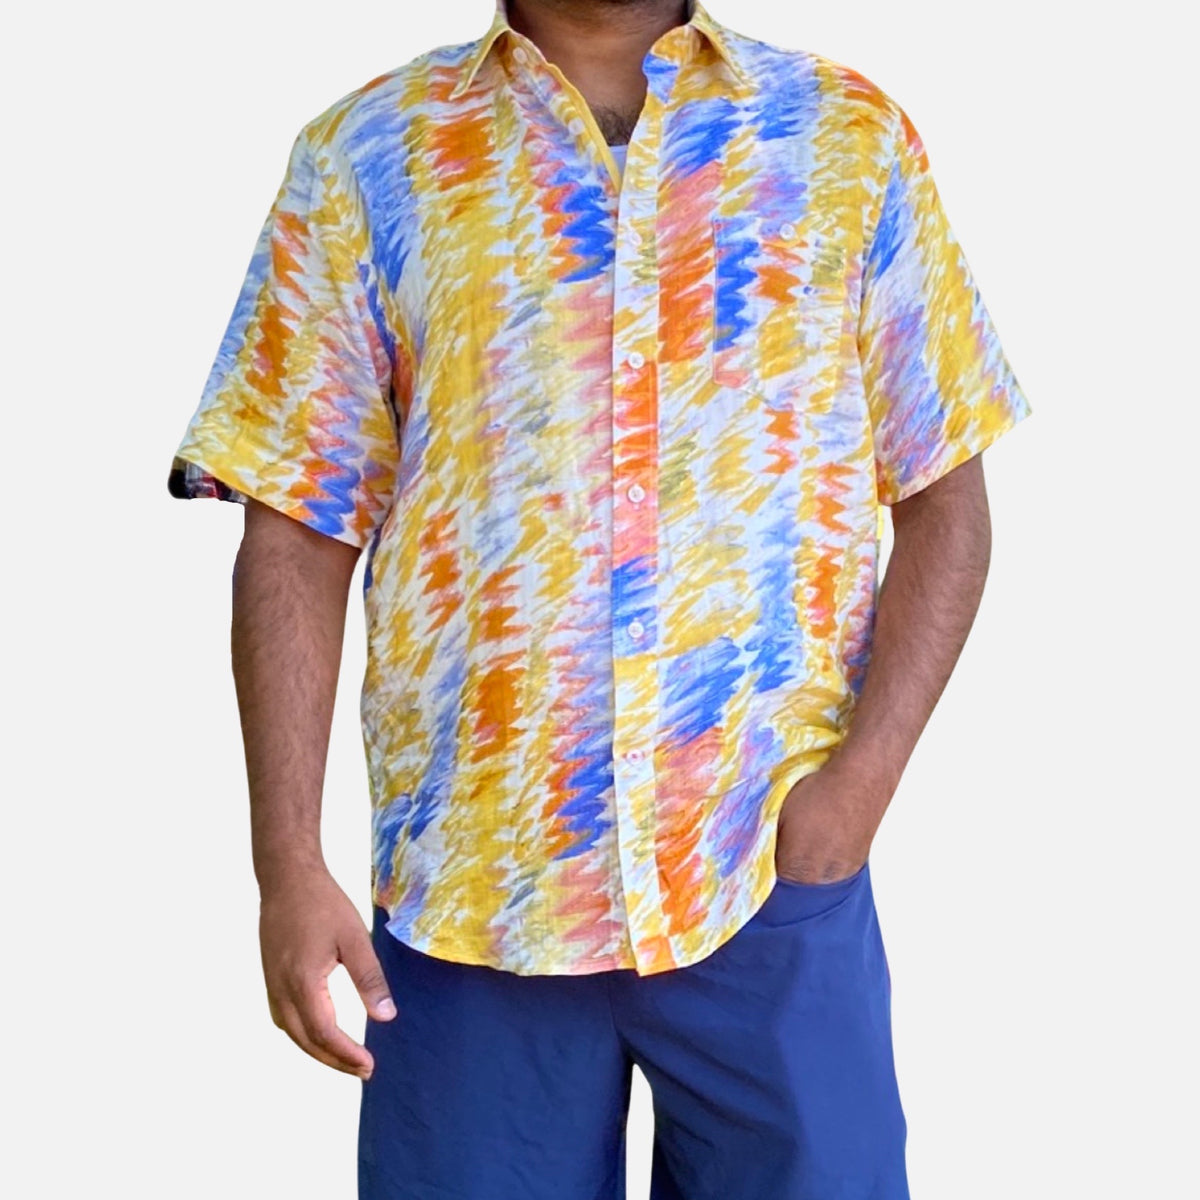 Men’s Yellow Linen Shirt “SS7907” by Inserch